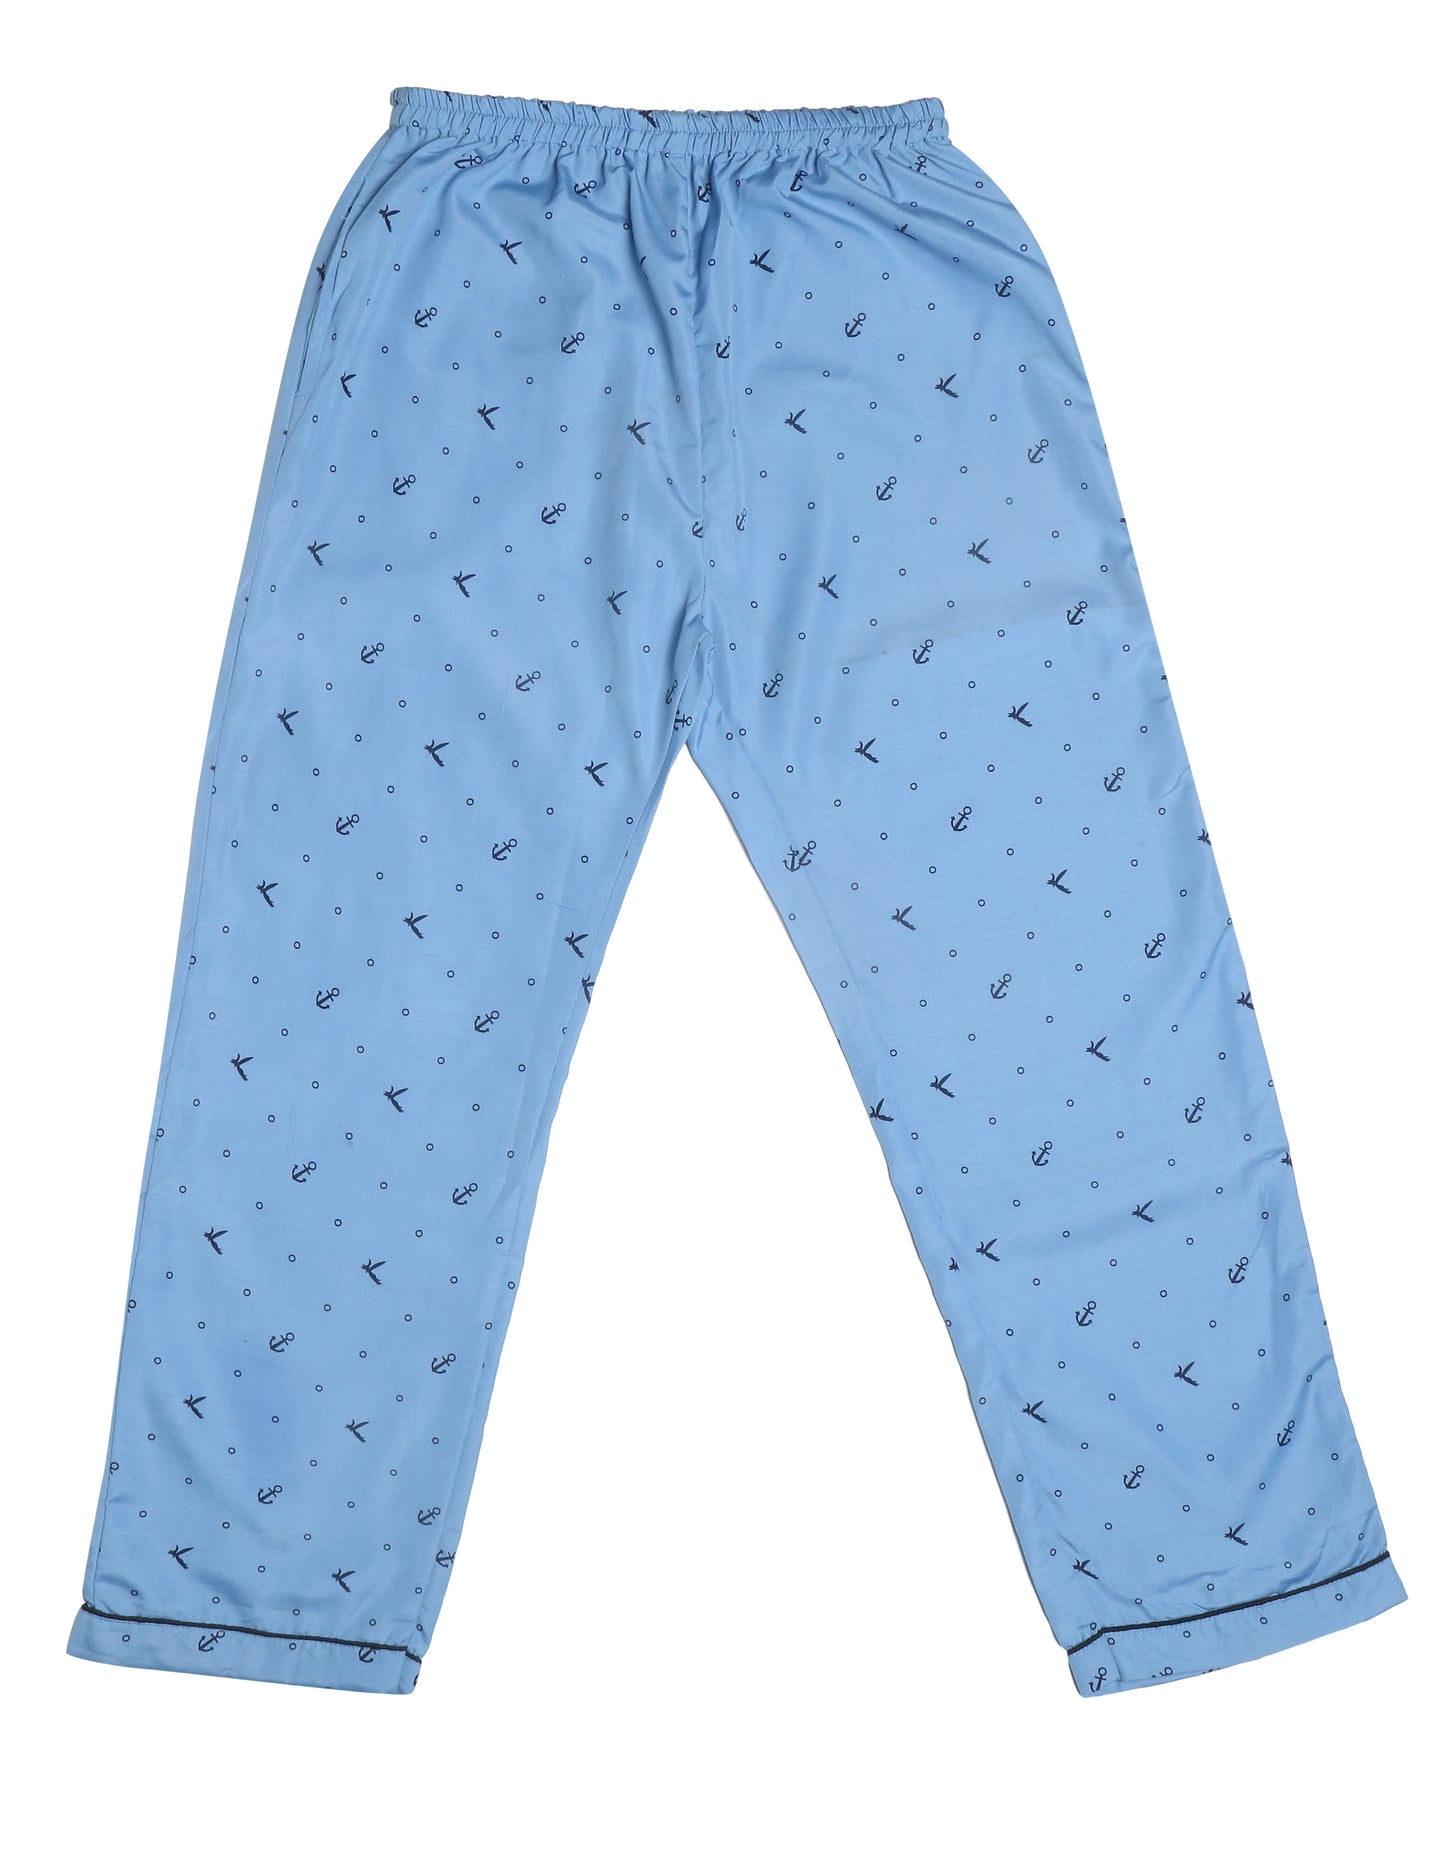 Single Pyjama (S) [Buy 1 Get 1 Free]